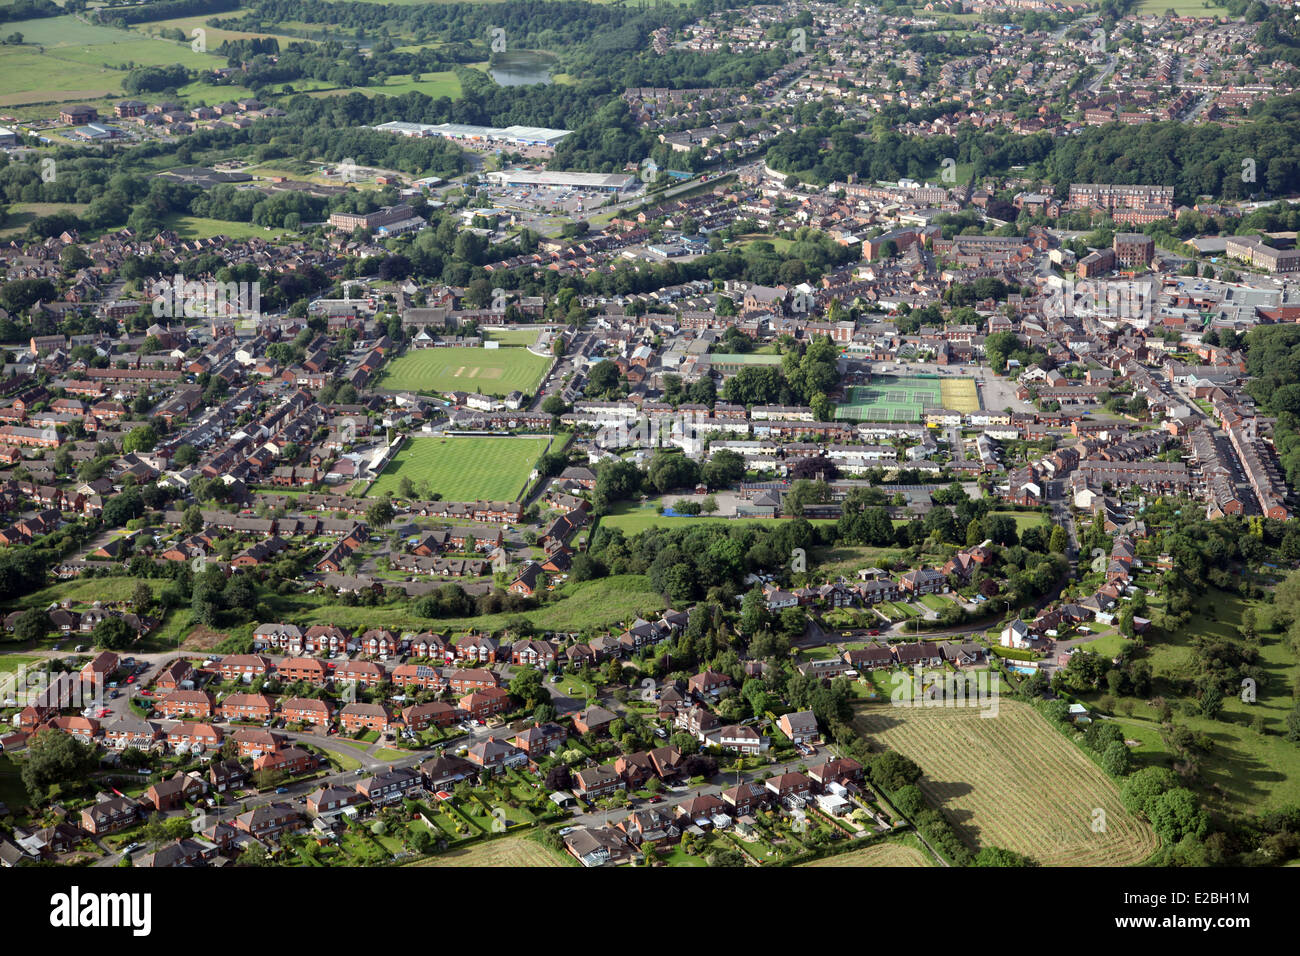 Vue aérienne de la ville de Congleton Cheshire, Royaume-Uni Banque D'Images